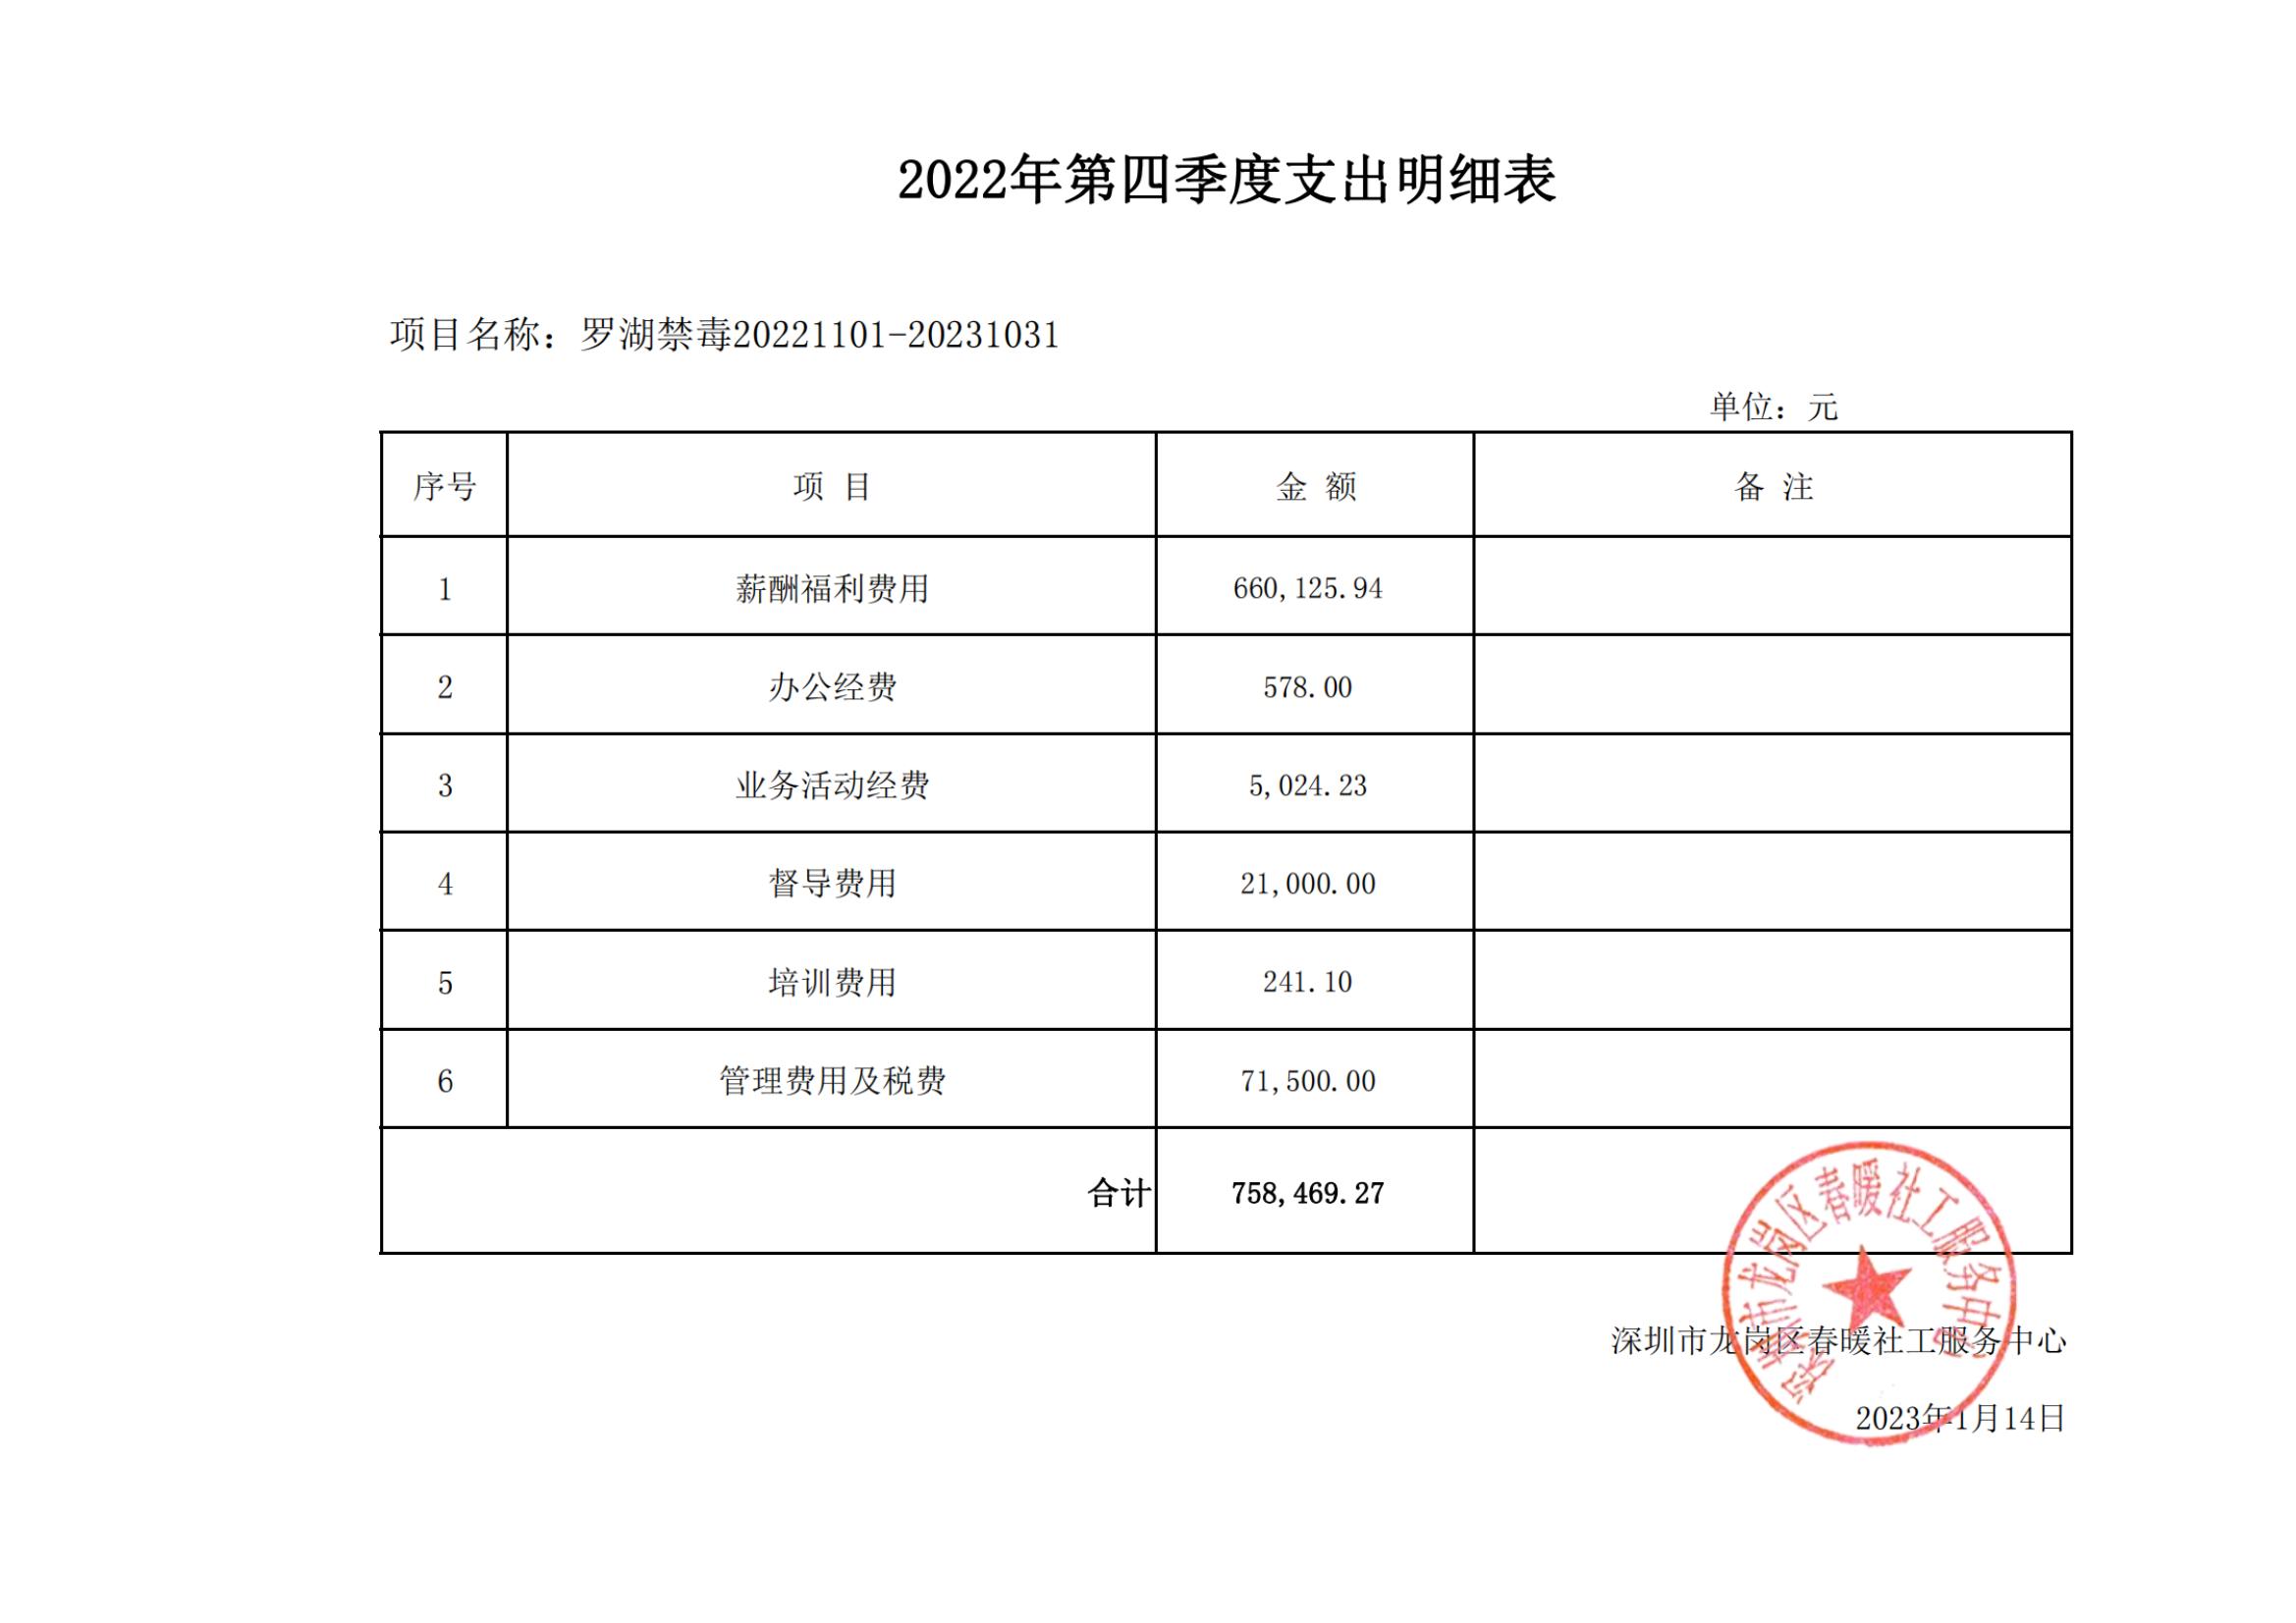 深圳市公安局罗湖分局禁毒社工服务采购项目2022年第四季度支出明细表公示